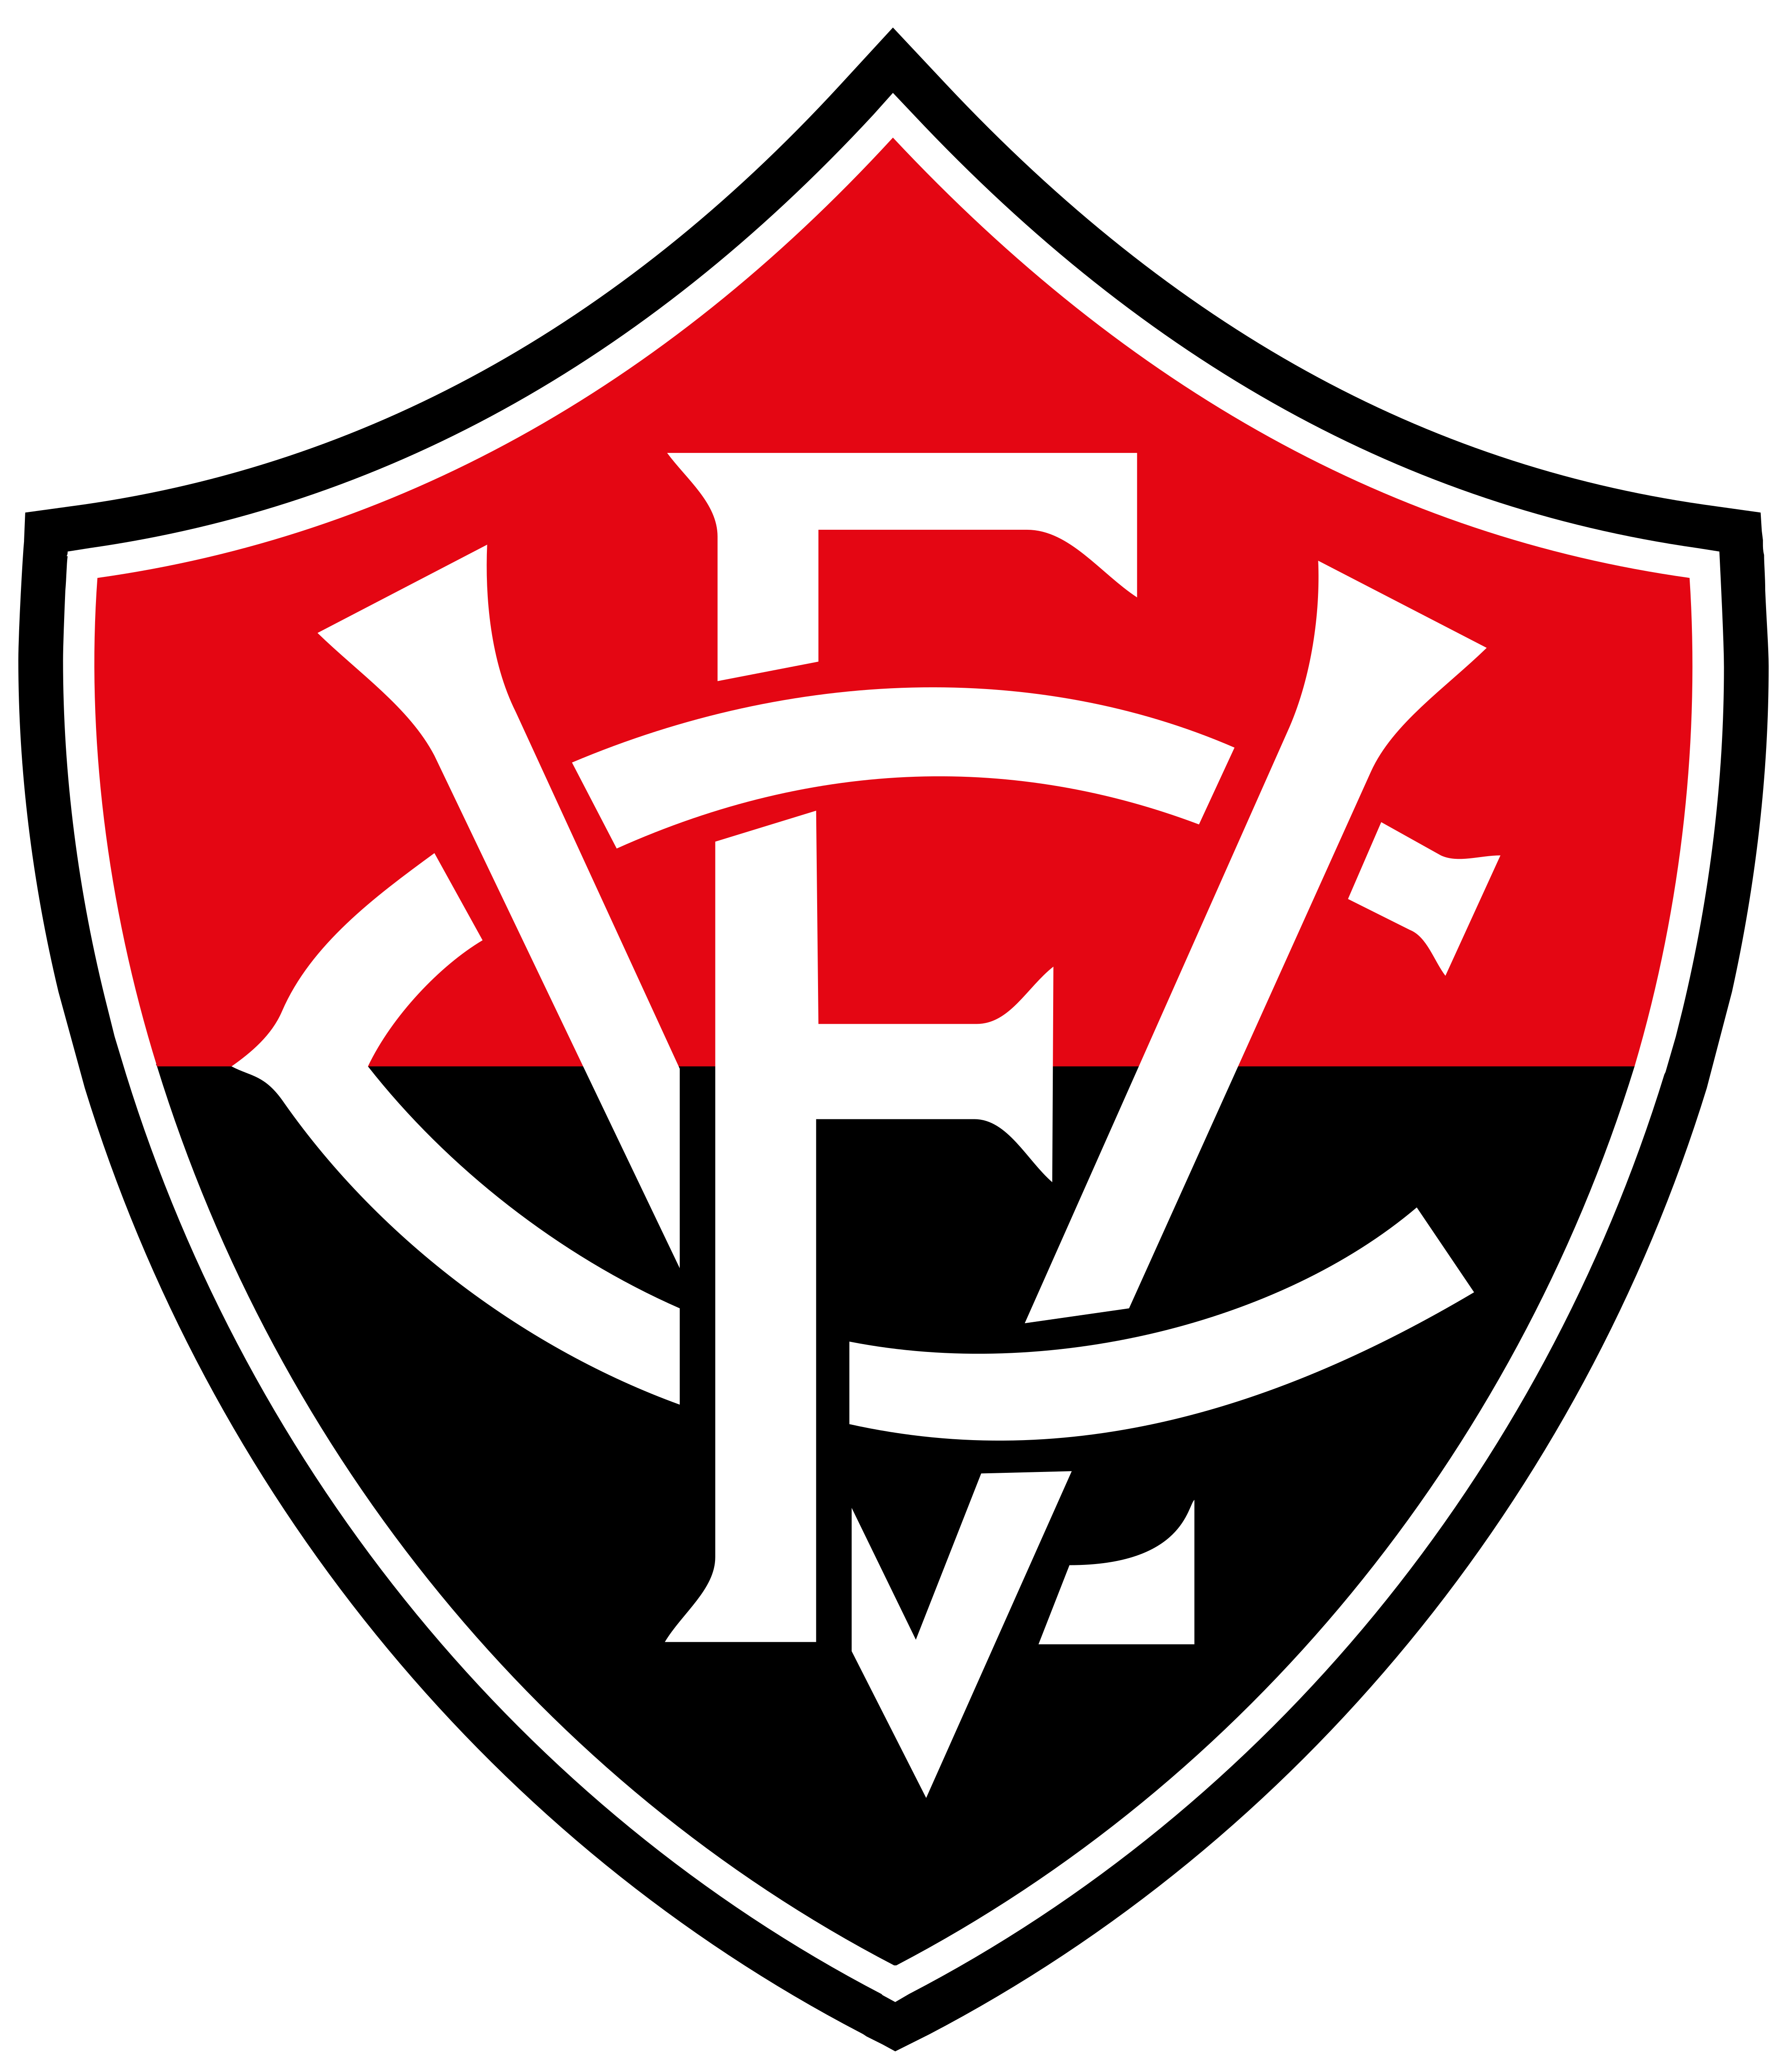  Esporte Clube Vitória Logo.